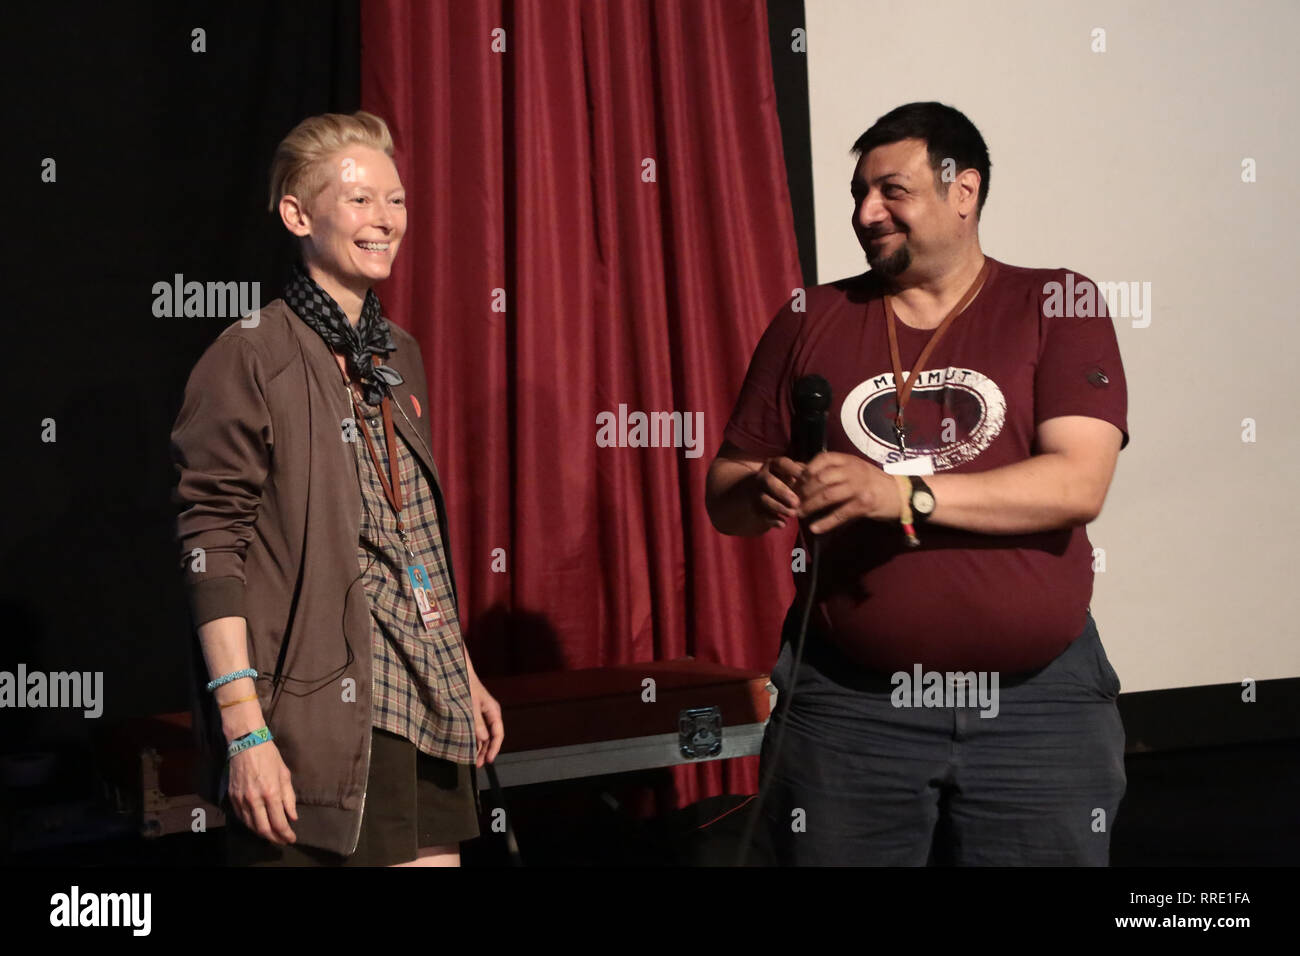 Tilda Swinton und Riyad Mustafa, Direktor des Pilton Palais Kino Zelt auf dem Glastonbury Festival, vor der Vorführung eines Films. Foto Datum: Saturd Stockfoto